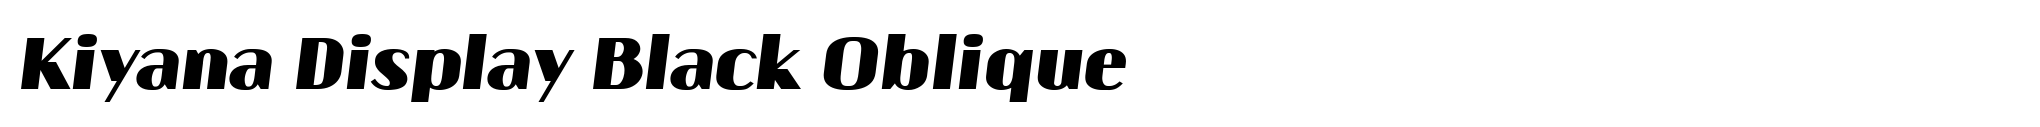 Kiyana Display Black Oblique image